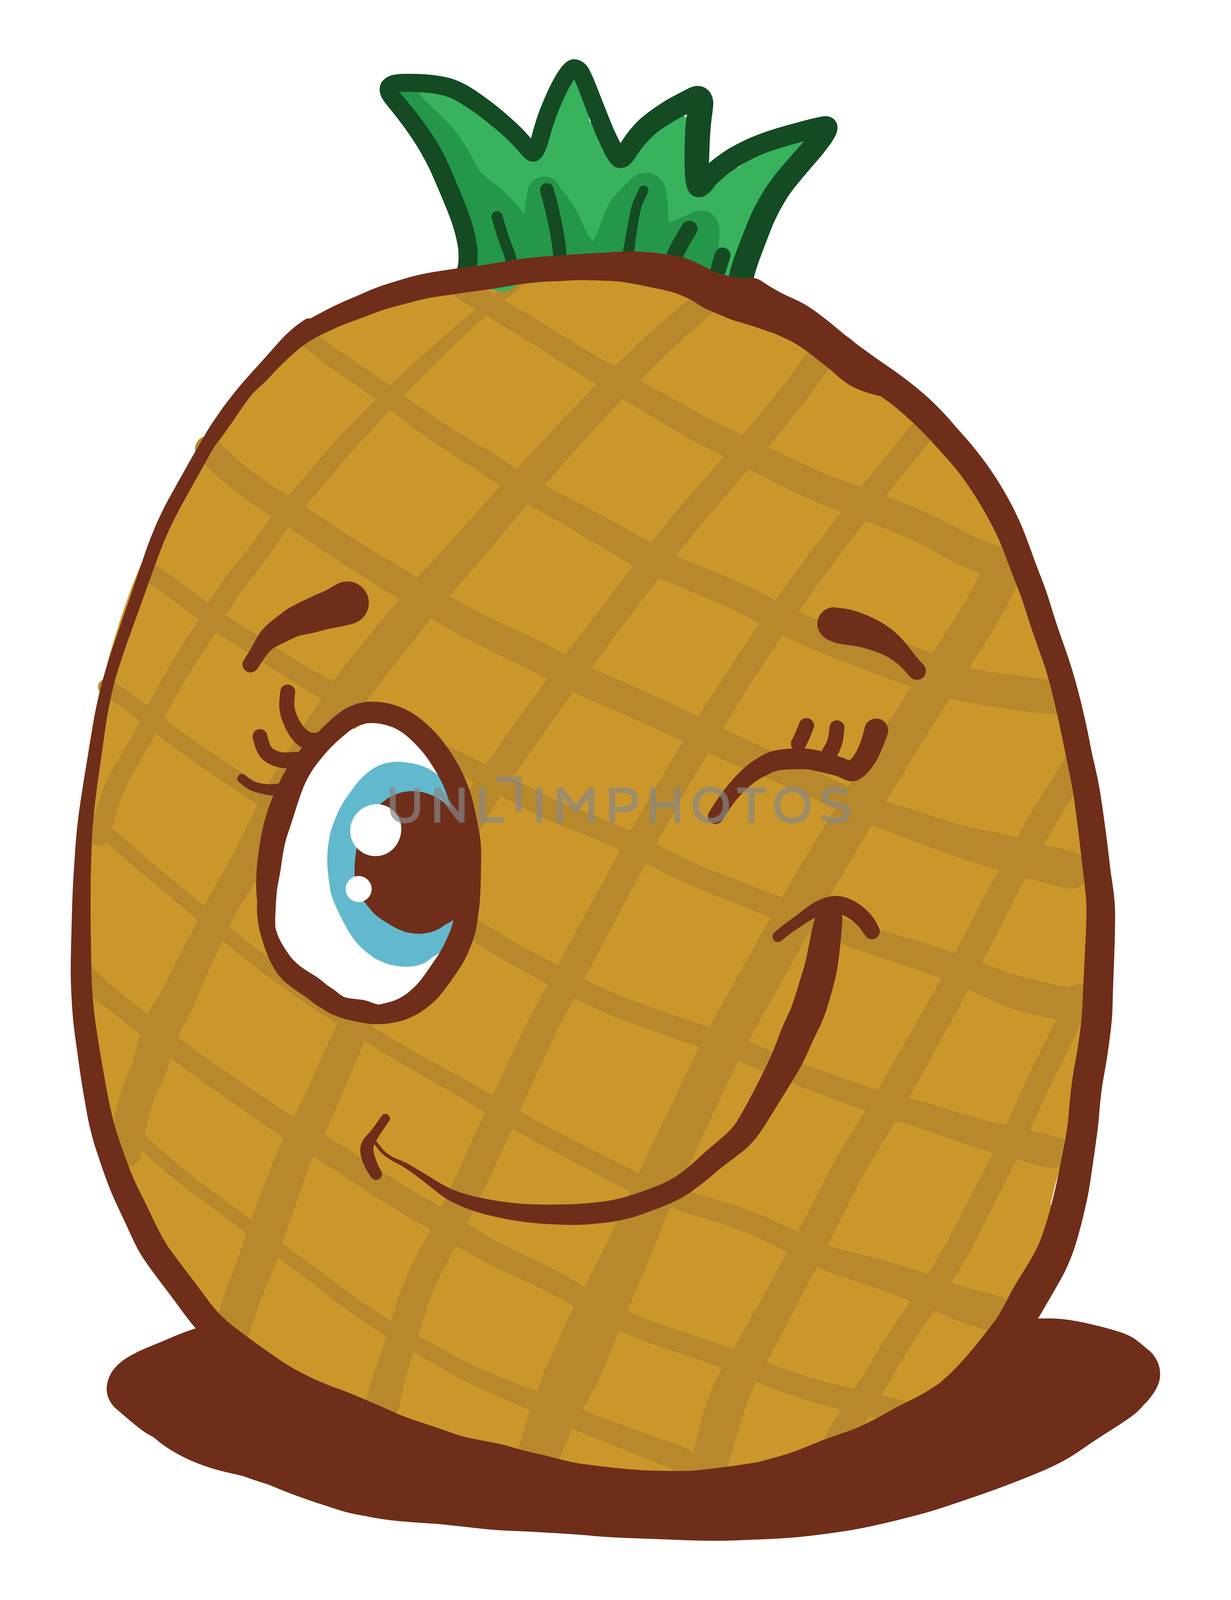 Pineapple winking , illustration, vector on white background by Morphart